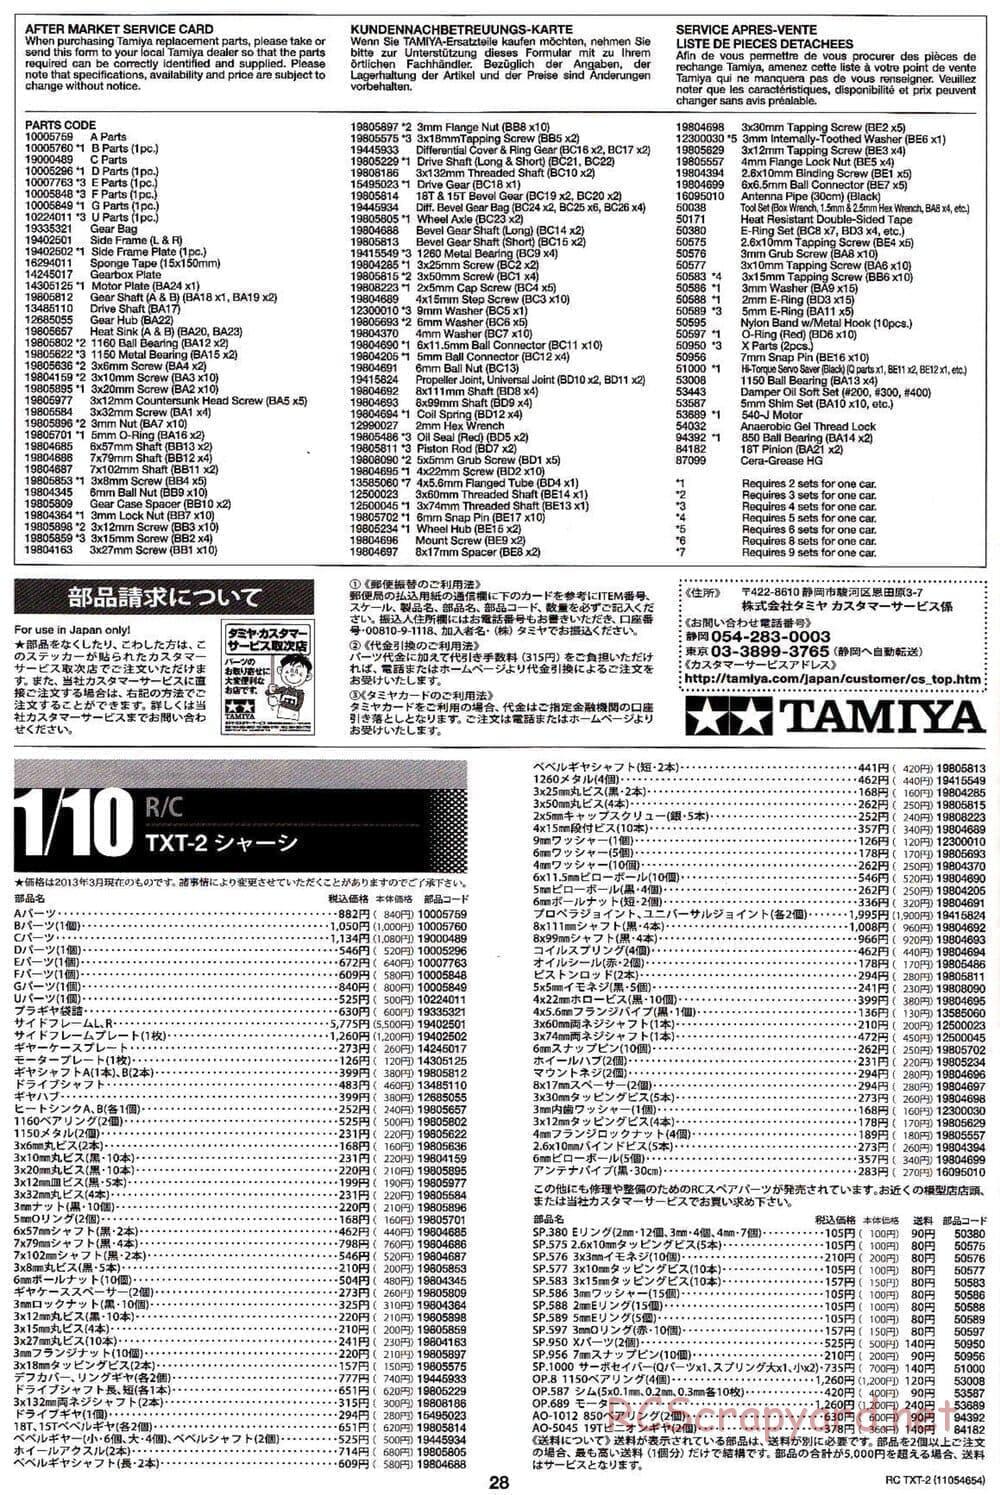 Tamiya - TXT-2 Chassis - Manual - Page 28